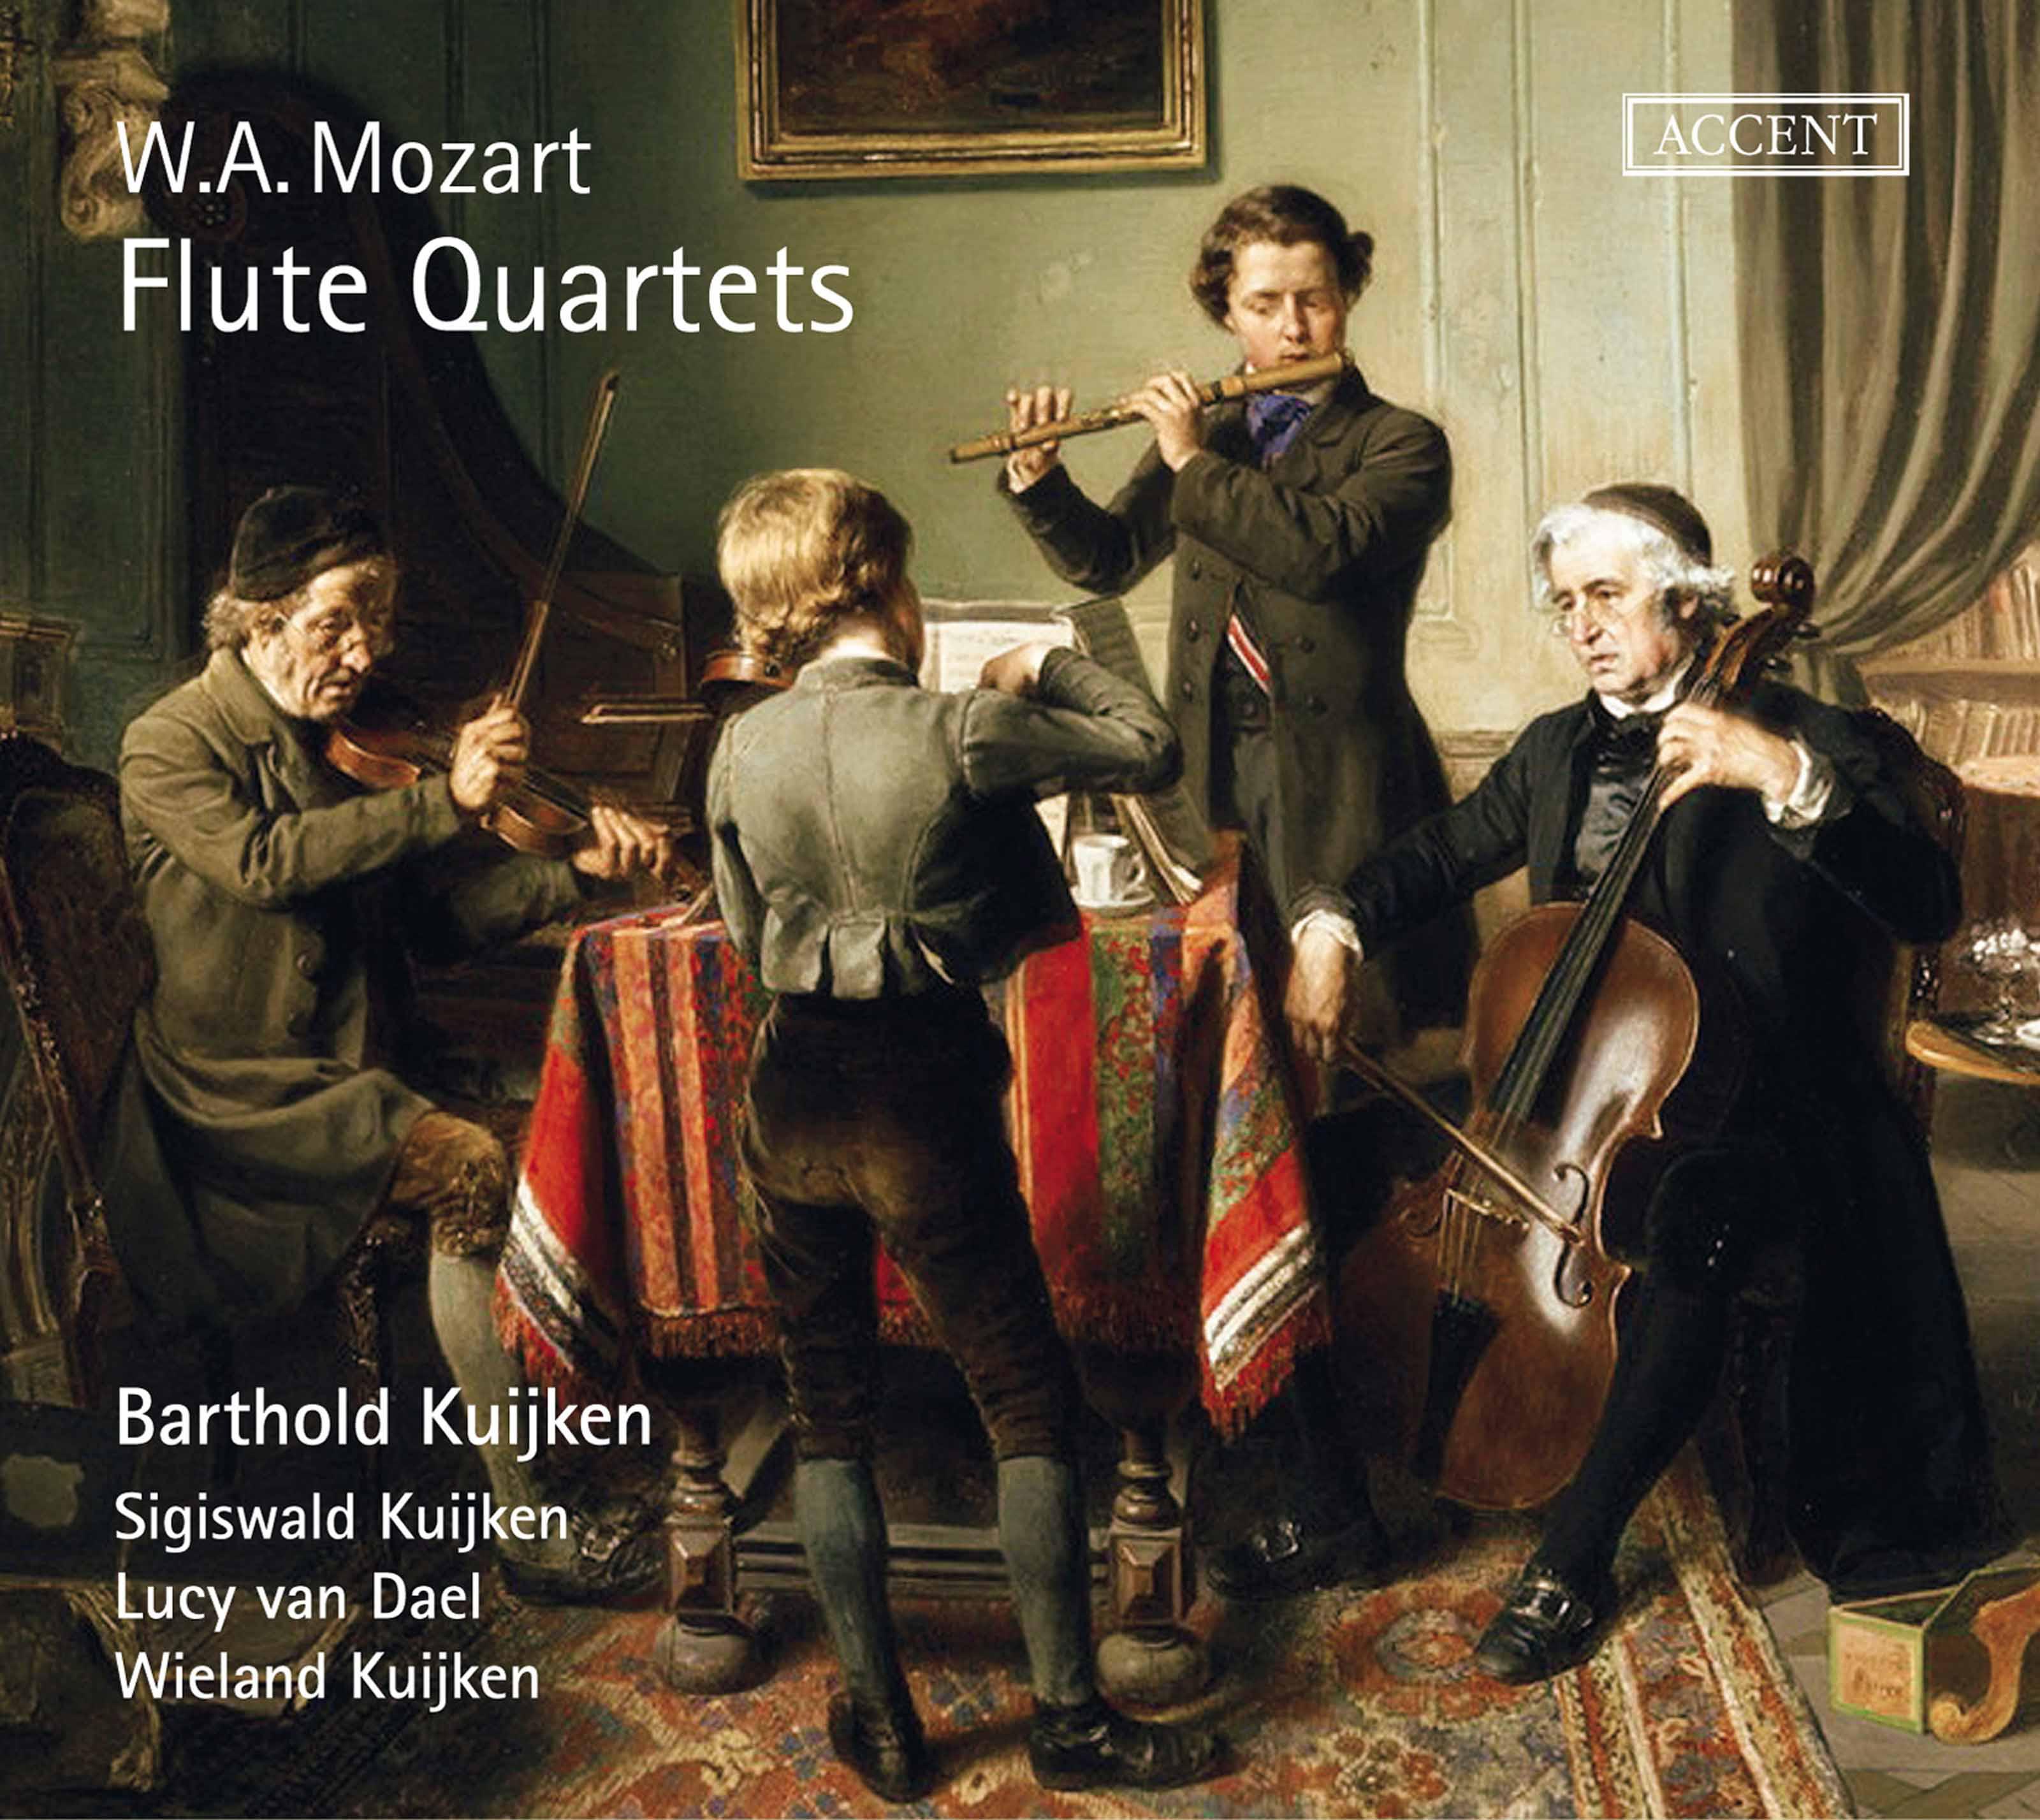 Flute Quartet No. 1 in D Major, K. 285: III. Rondo